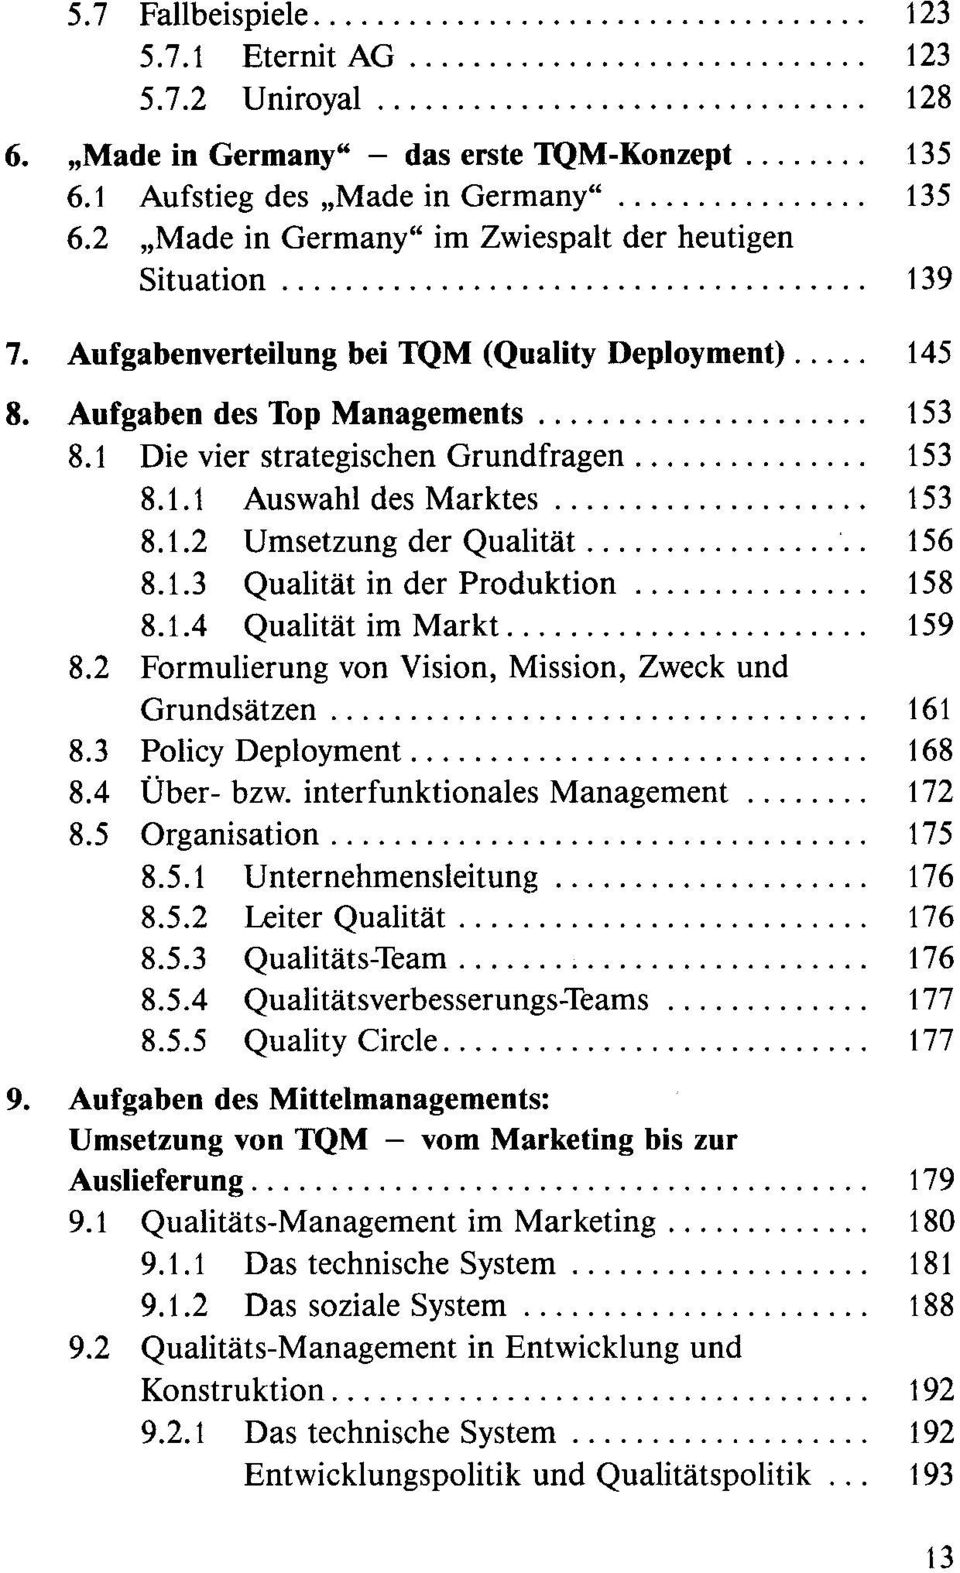 Aufgabenverteilung bei TQM (Quality Deployment)..... 145 8. Aufgaben des Top Managements..................... 153 8.1 Die vier strategischen Grundfragen............... 153 8.1.1 Auswahl des Marktes.